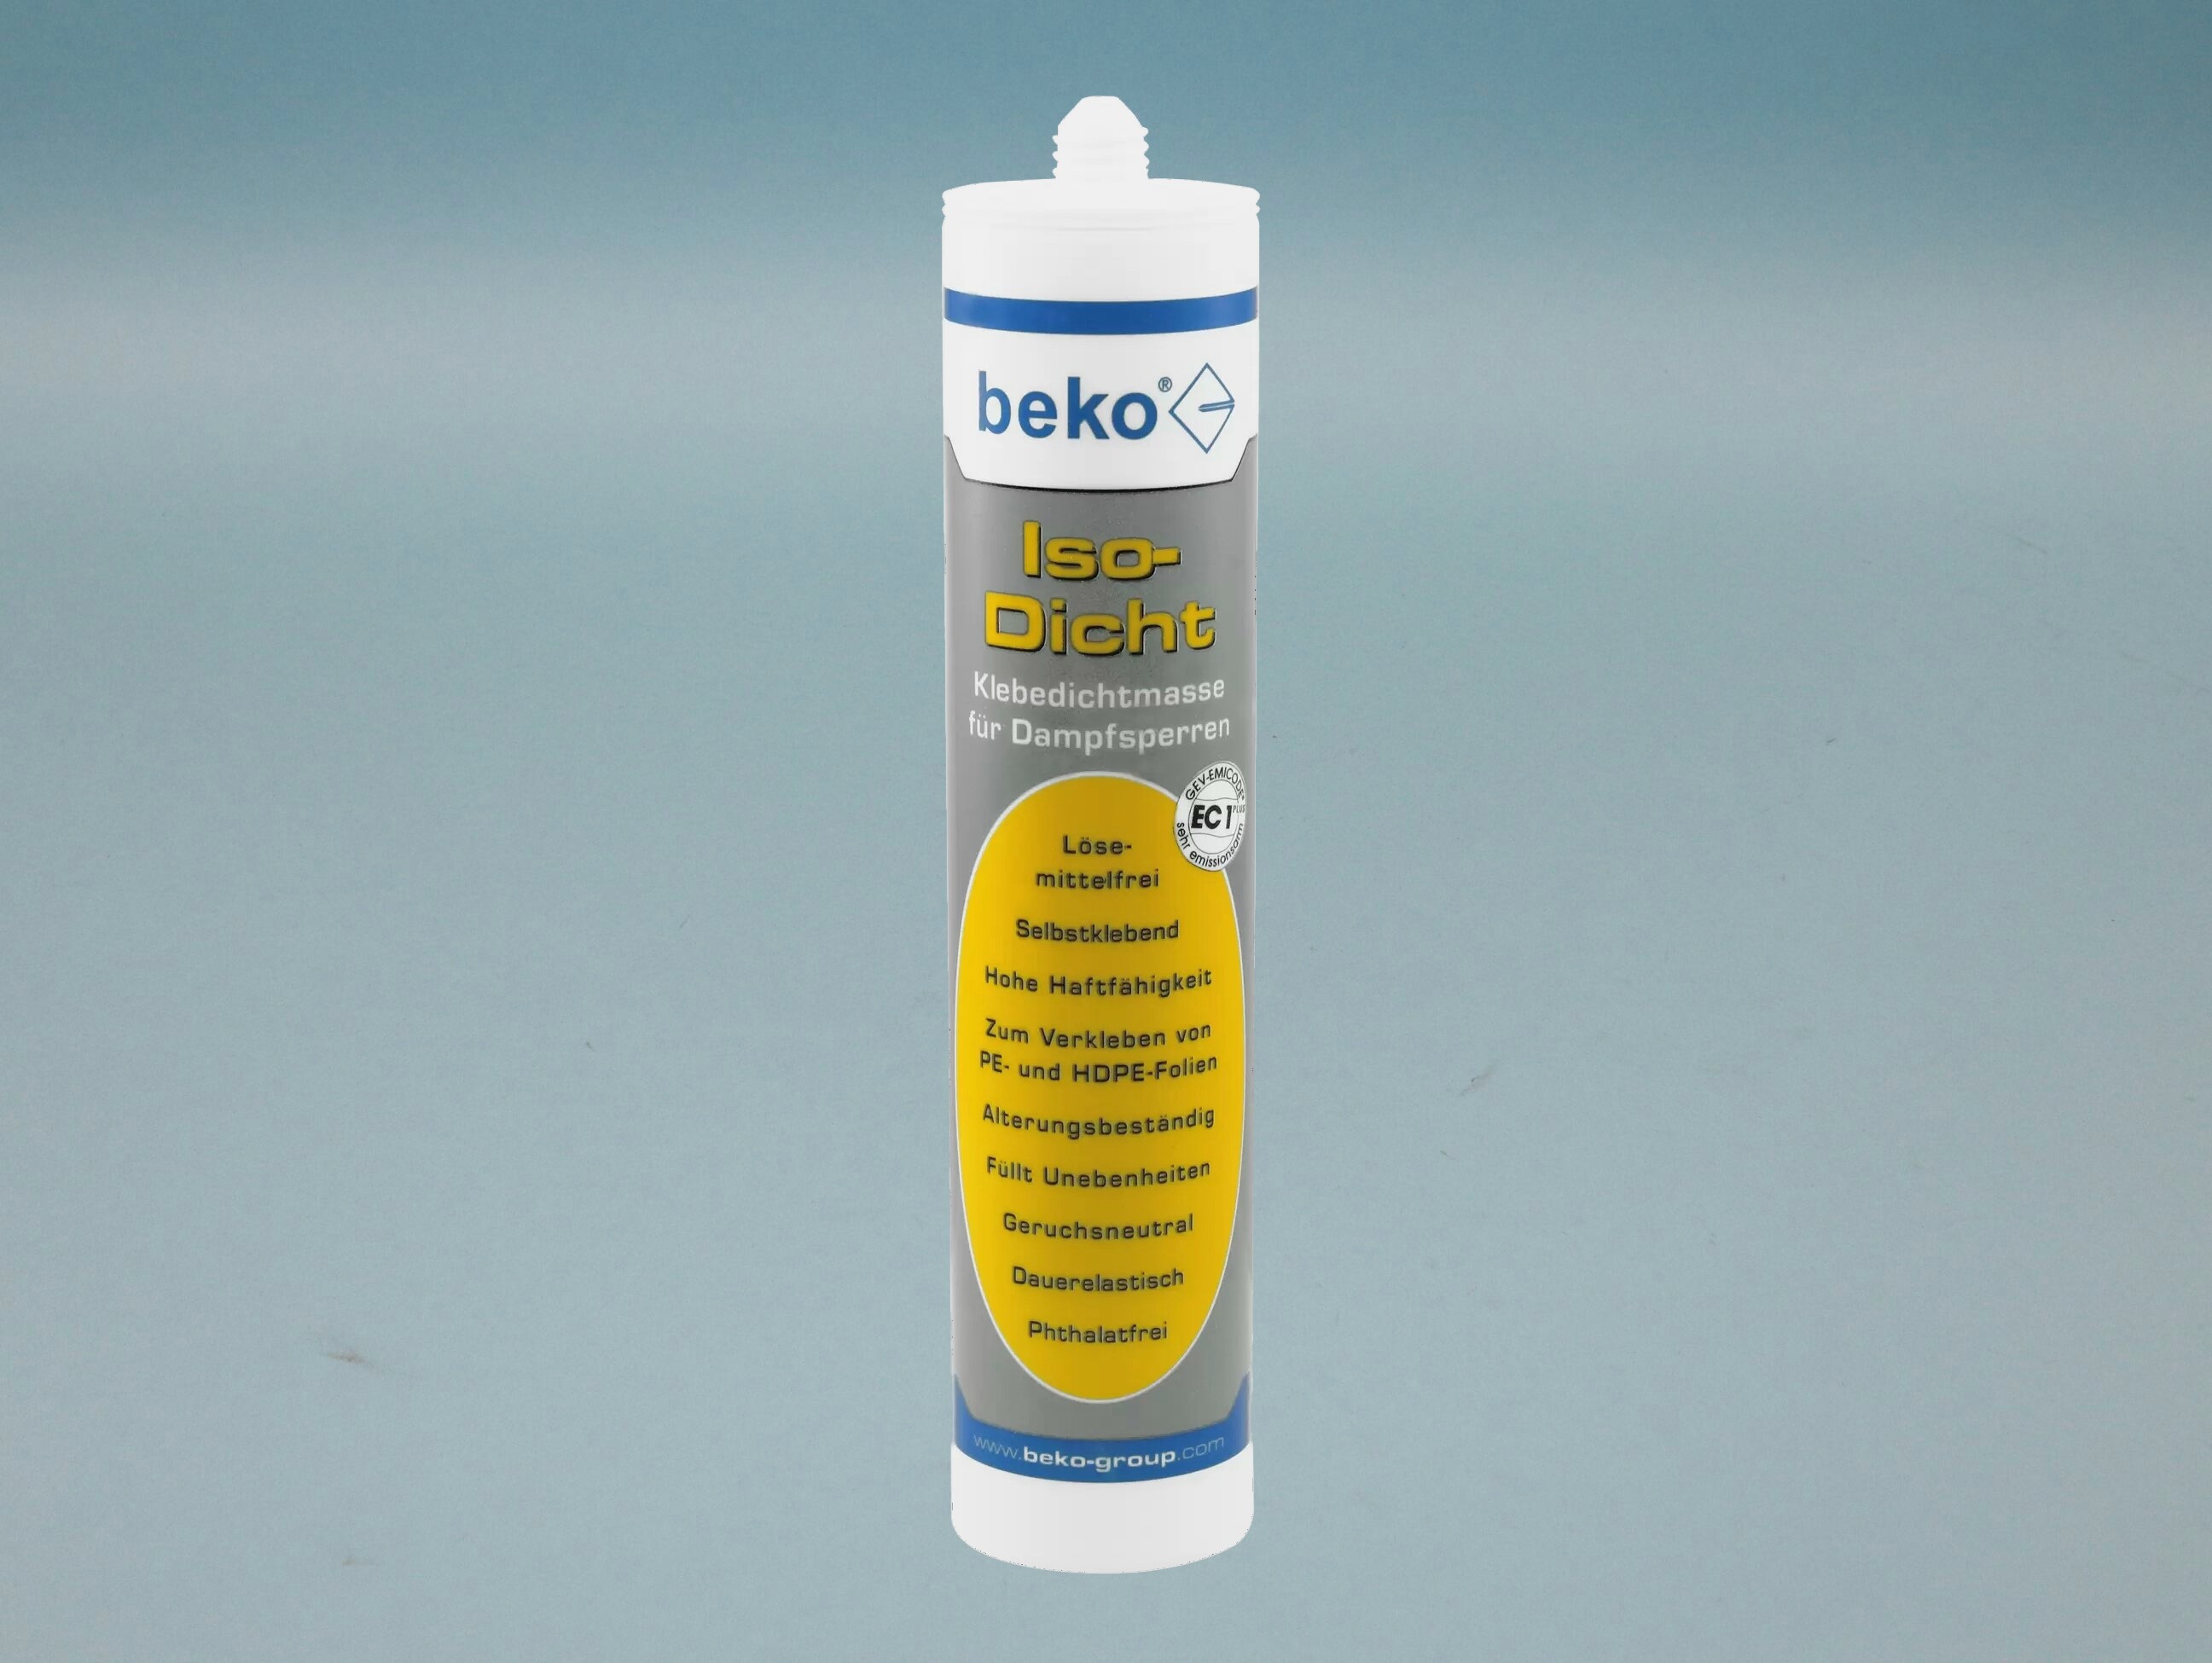 Beko Iso-Dicht, Dichtkleber für Dampfsperren